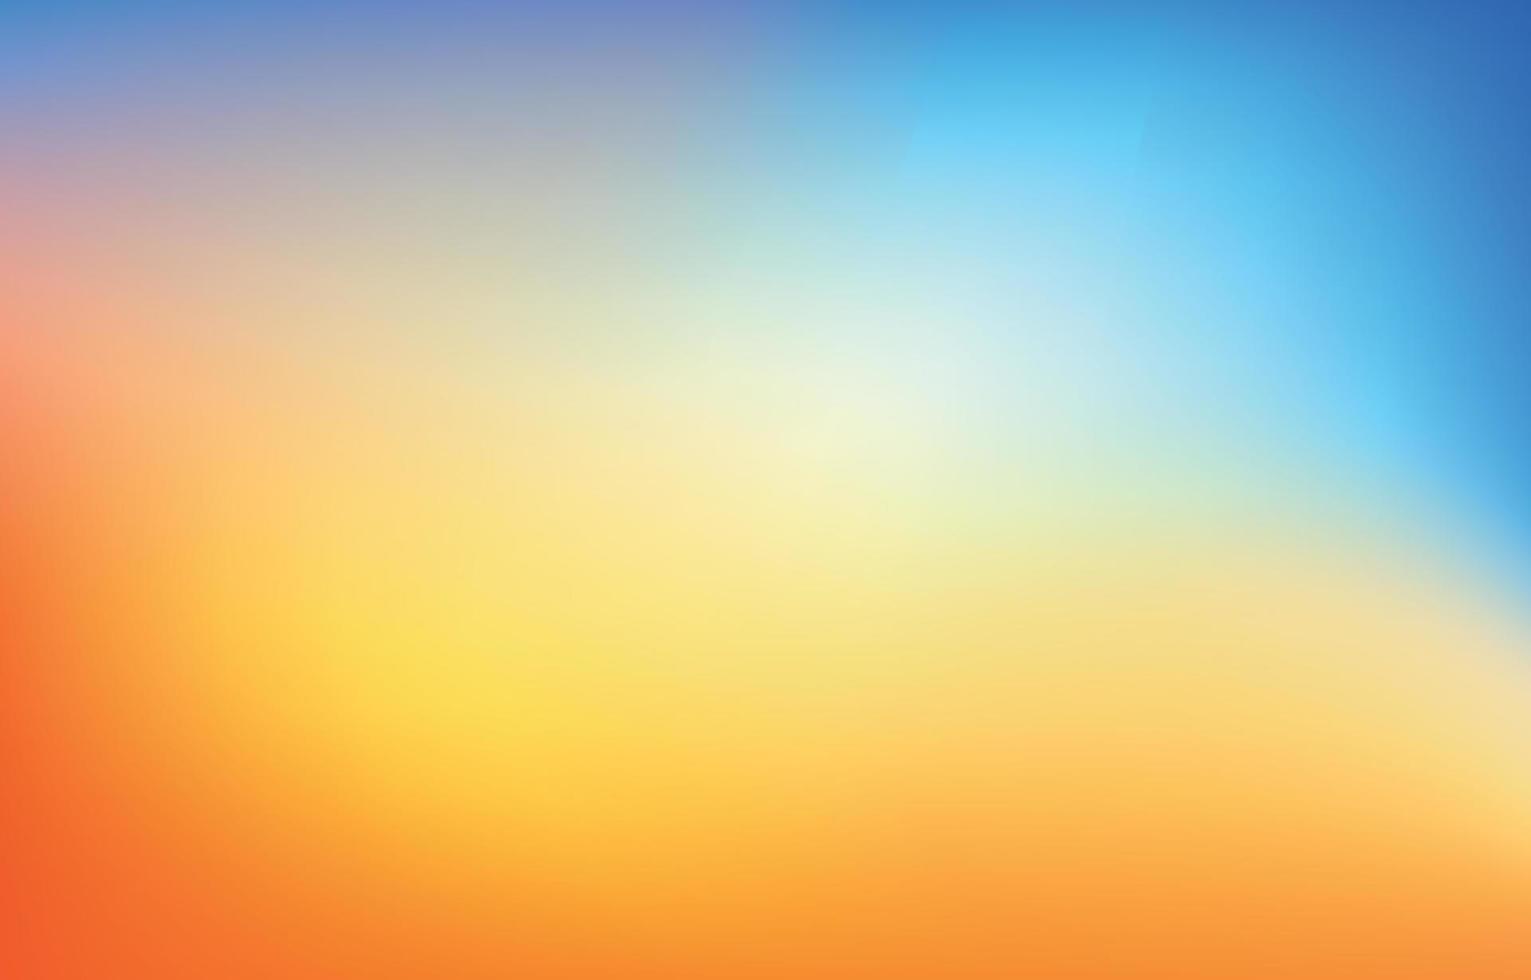 Farbverlauf verschwommen abstrakter Hintergrund holographische Mesh-Stil vektor